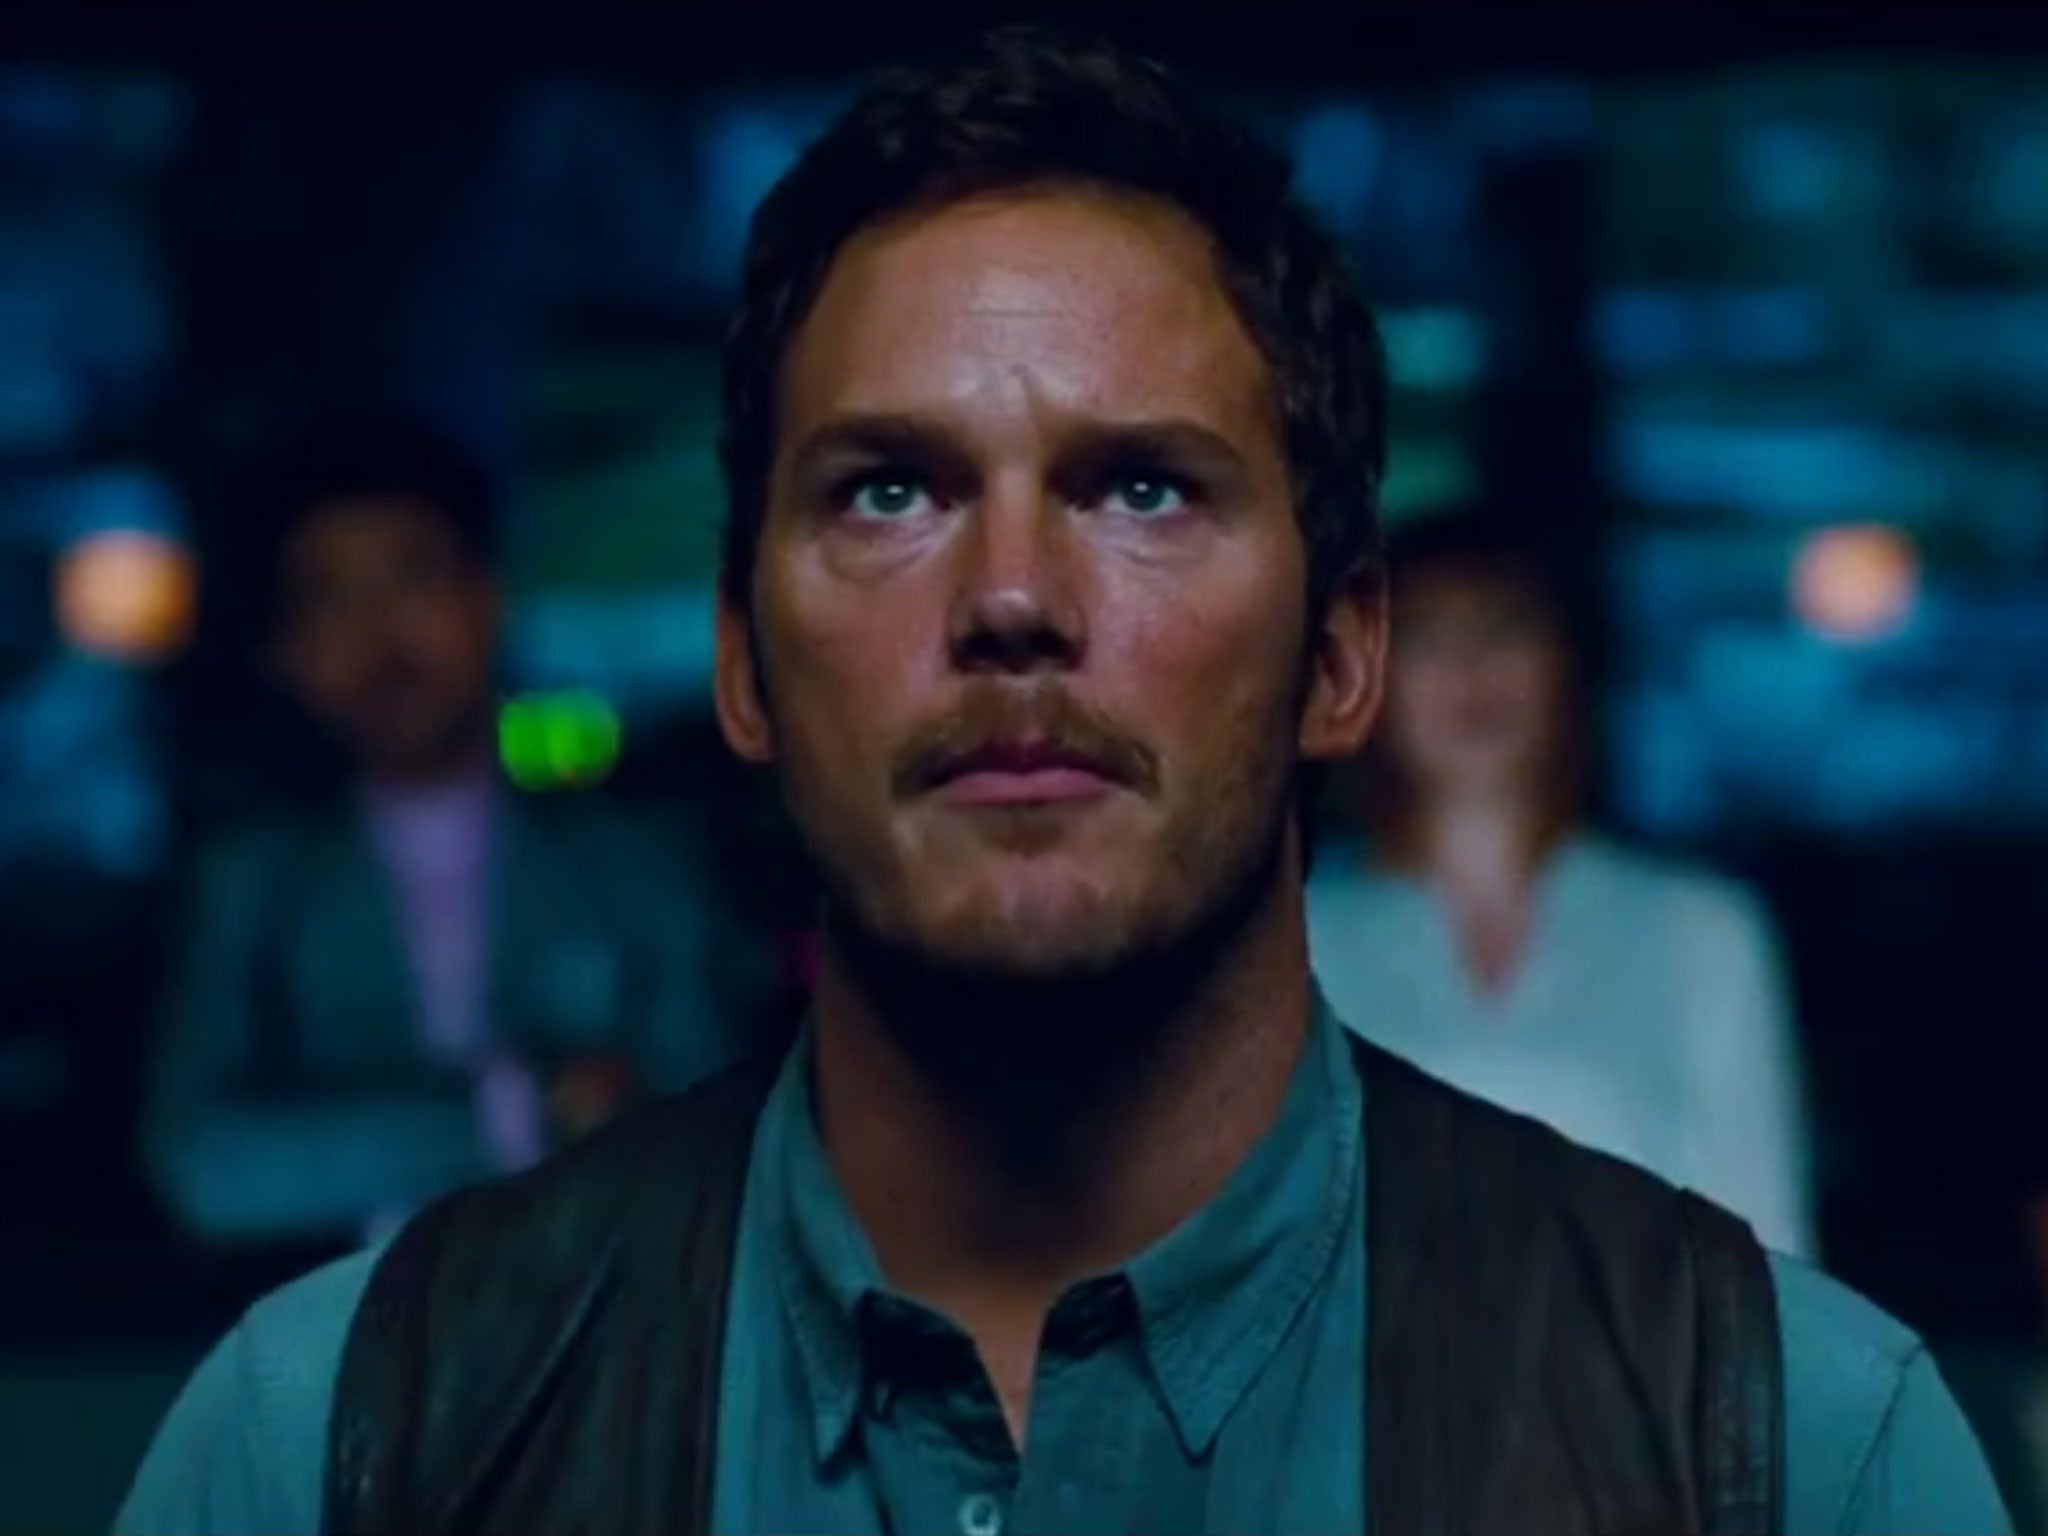 Chris Pratt in Jurassic World's latest trailer